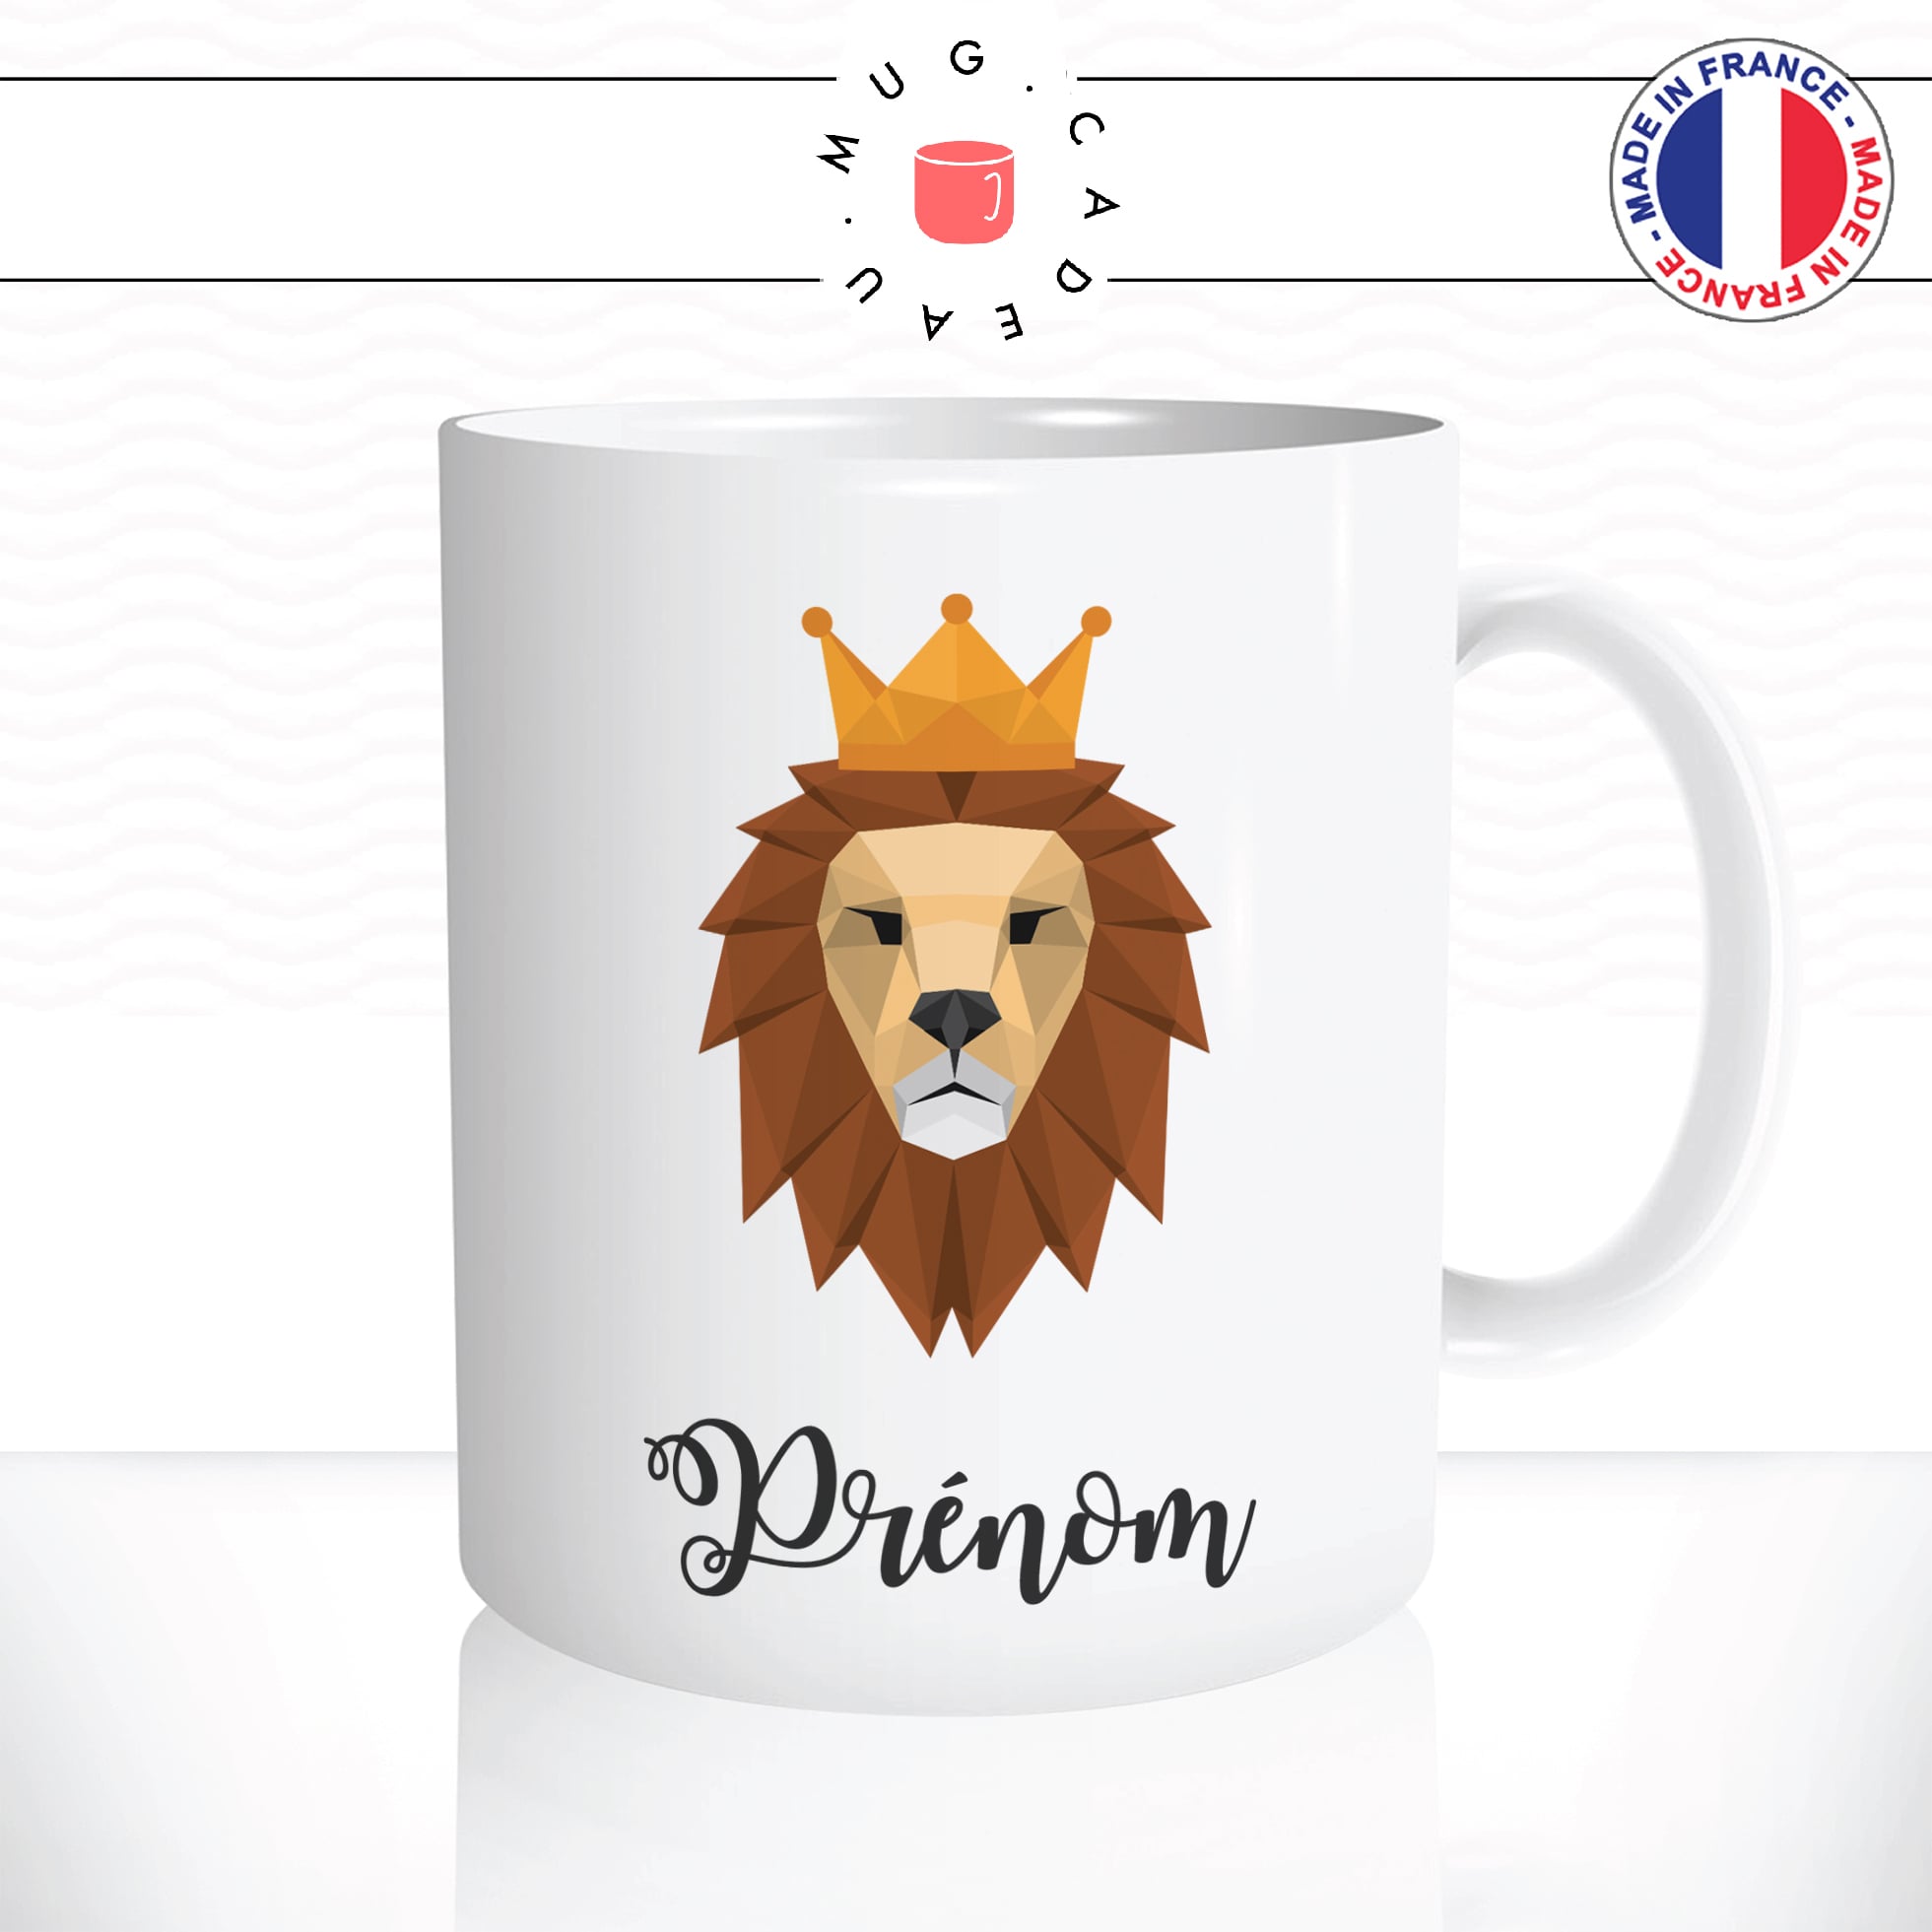 mug-tasse-animal-lion-roi-savanne-couronne-origami-enfant-drole-mignon-dessin-animé-classique-culte-cool-fun-mugs-tasses-café-thé-idée-cadeau-original-prénom-personnalisé-personnalisable1